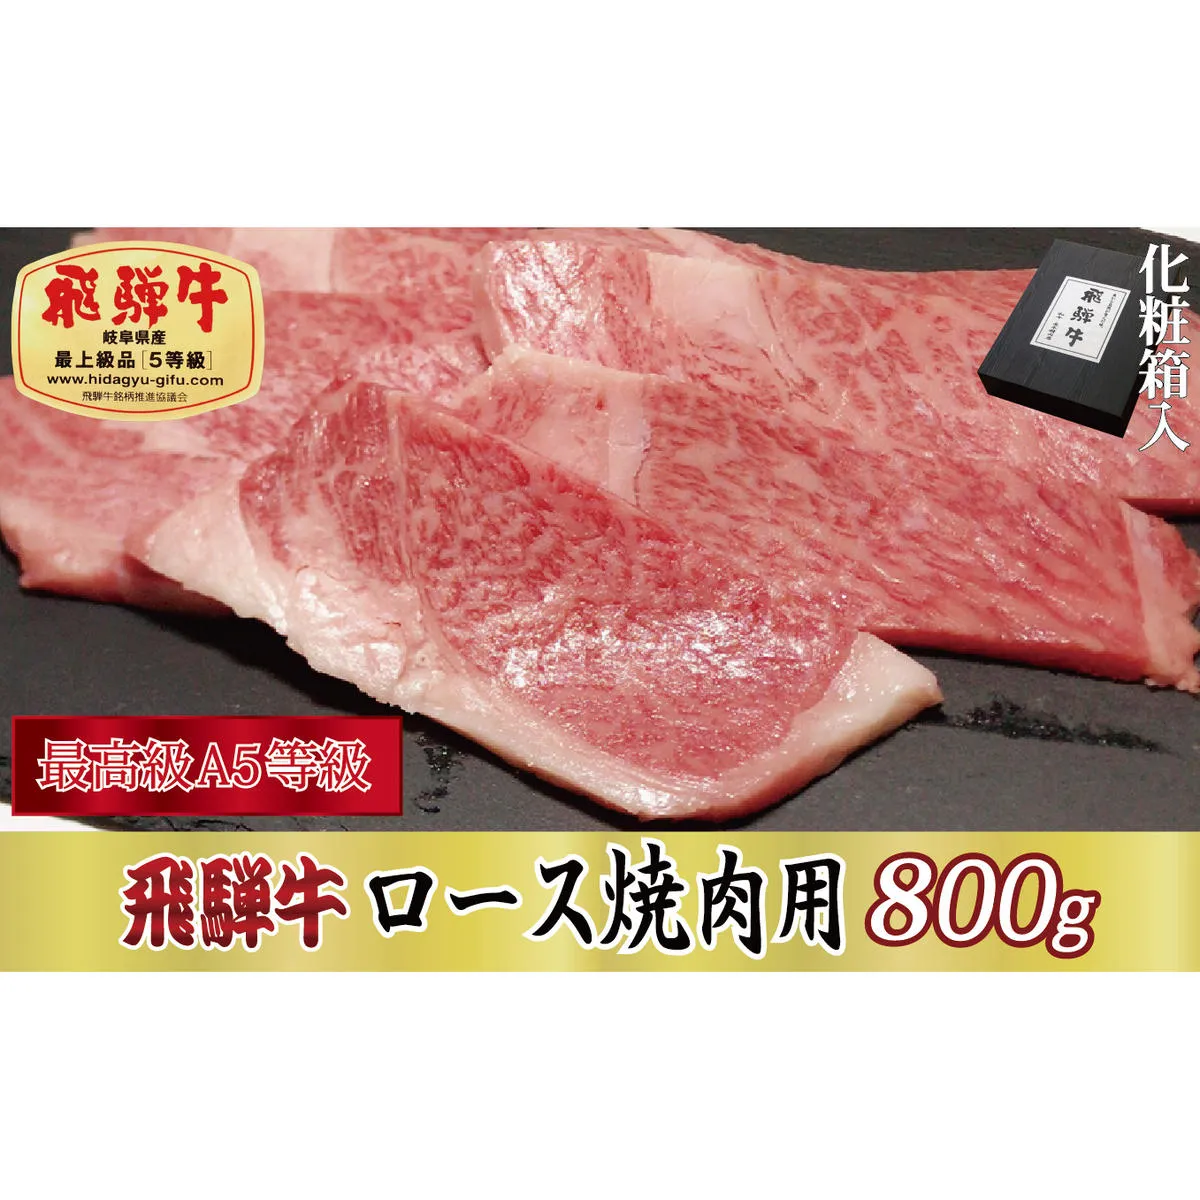 【化粧箱入り・最高級A5等級】飛騨牛ロース焼肉用800g